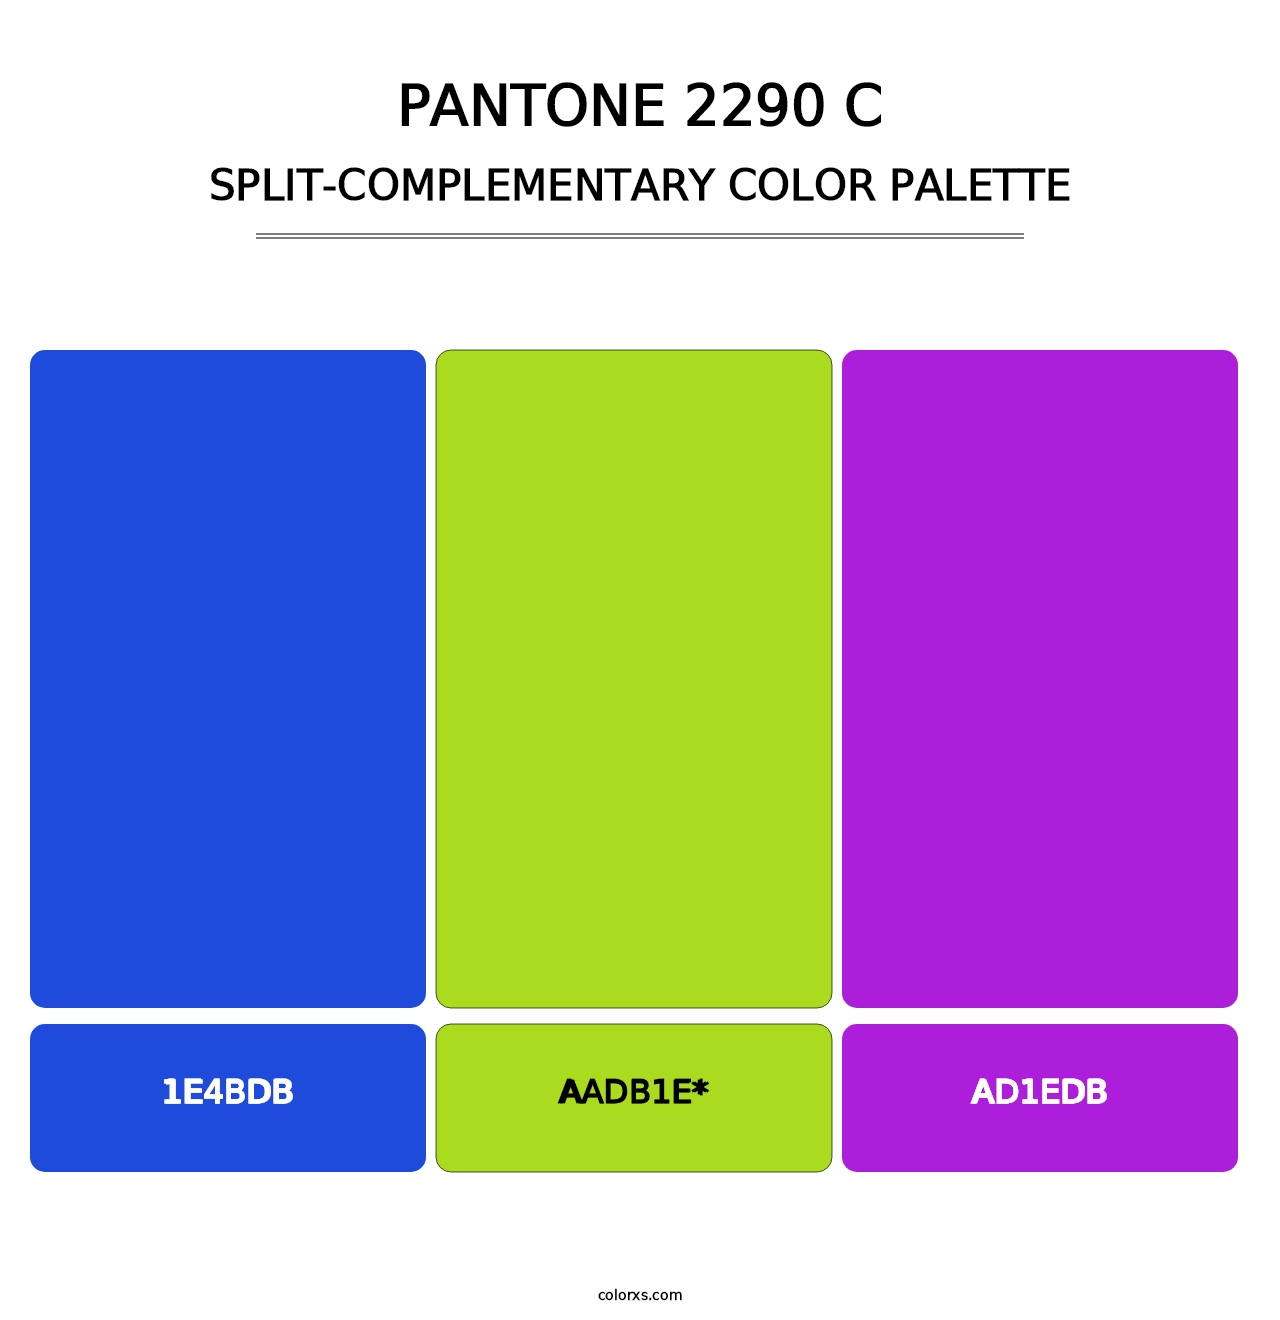 PANTONE 2290 C - Split-Complementary Color Palette